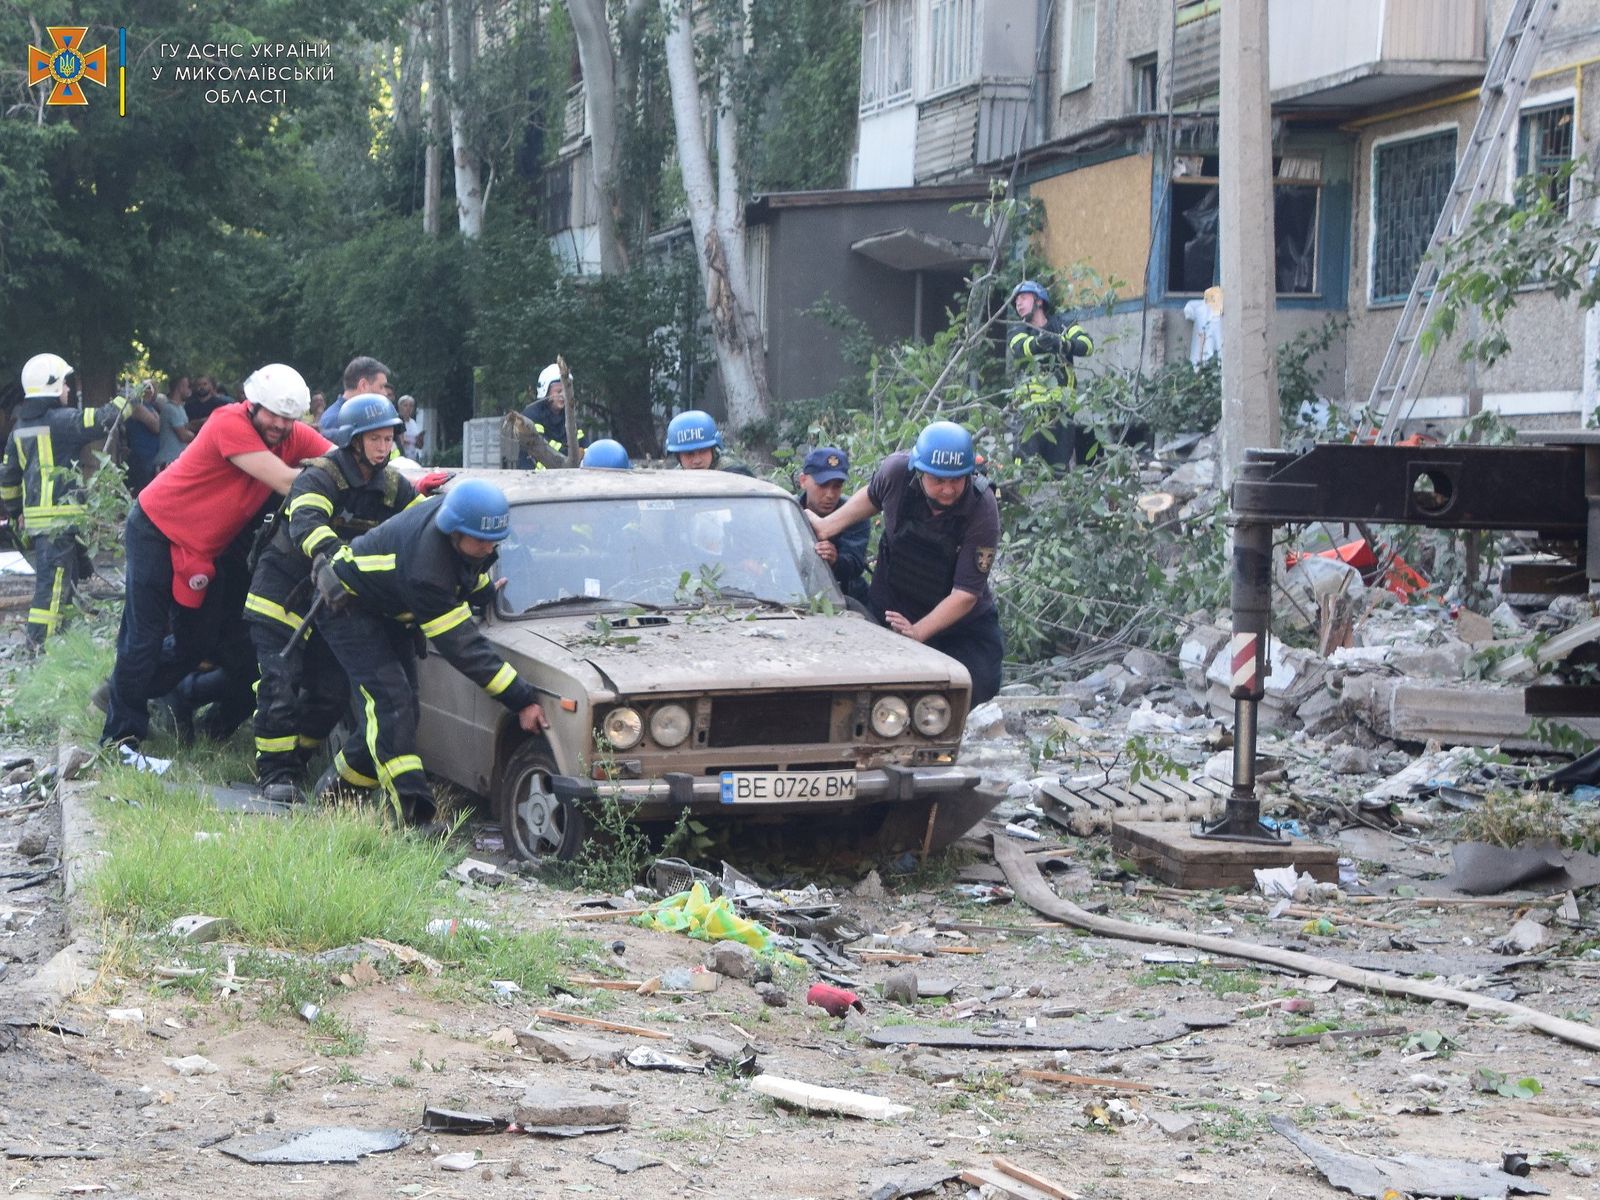 عمال الإنقاذ ينقلون سيارة بالقرب من مبنى سكني تعرض لضربة روسية في ميكولايف الأوكرانية، 29 يونيو 2022.  - via REUTERS